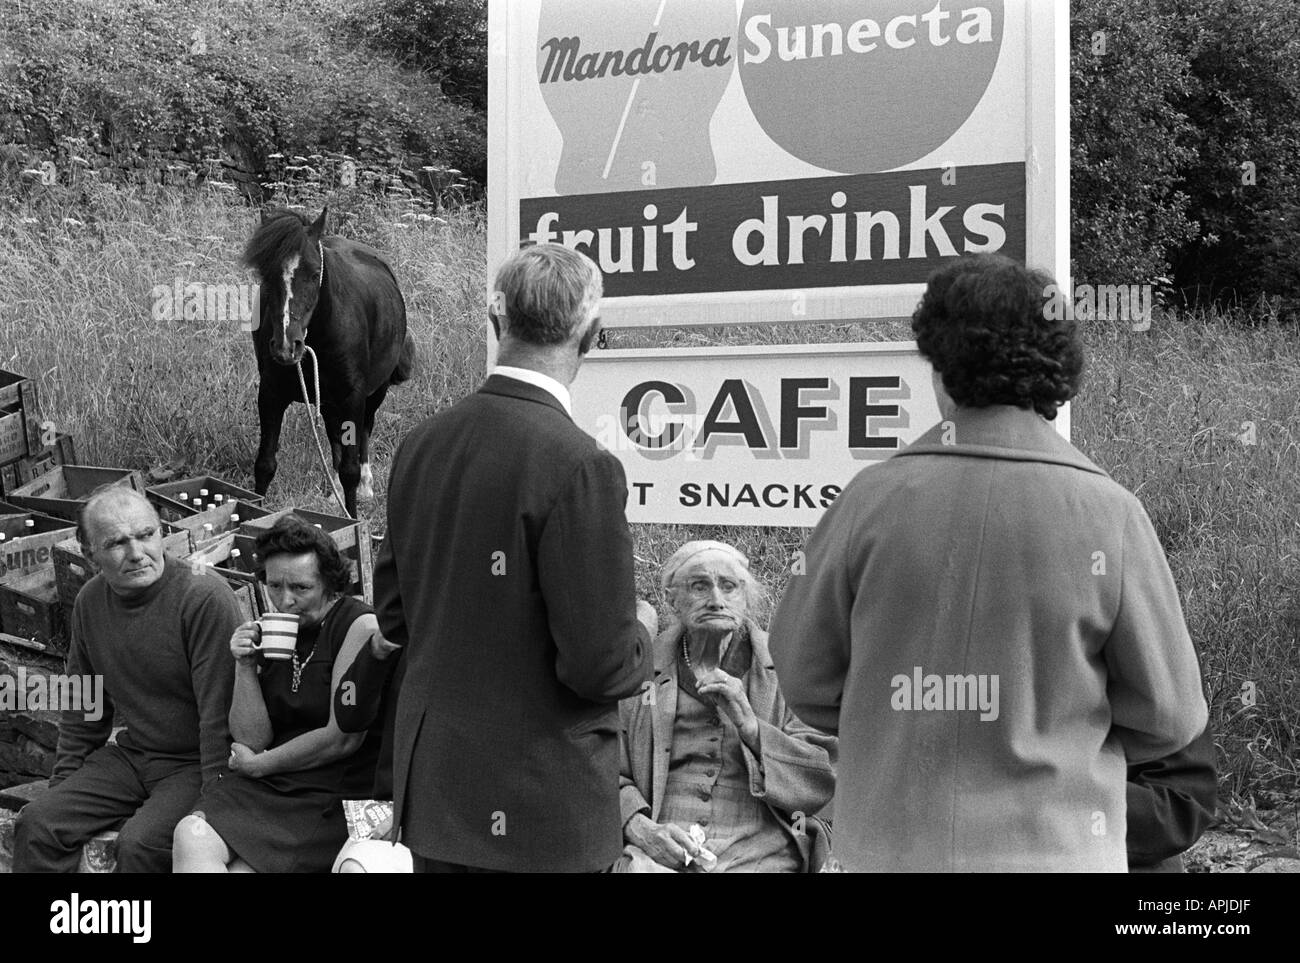 Sortie en famille des années 1970 buvant une tasse de thé sous l'extérieur sous un panneau de café. Matlock Derbyshire 1970 Royaume-Uni. HOMER SYKES Banque D'Images